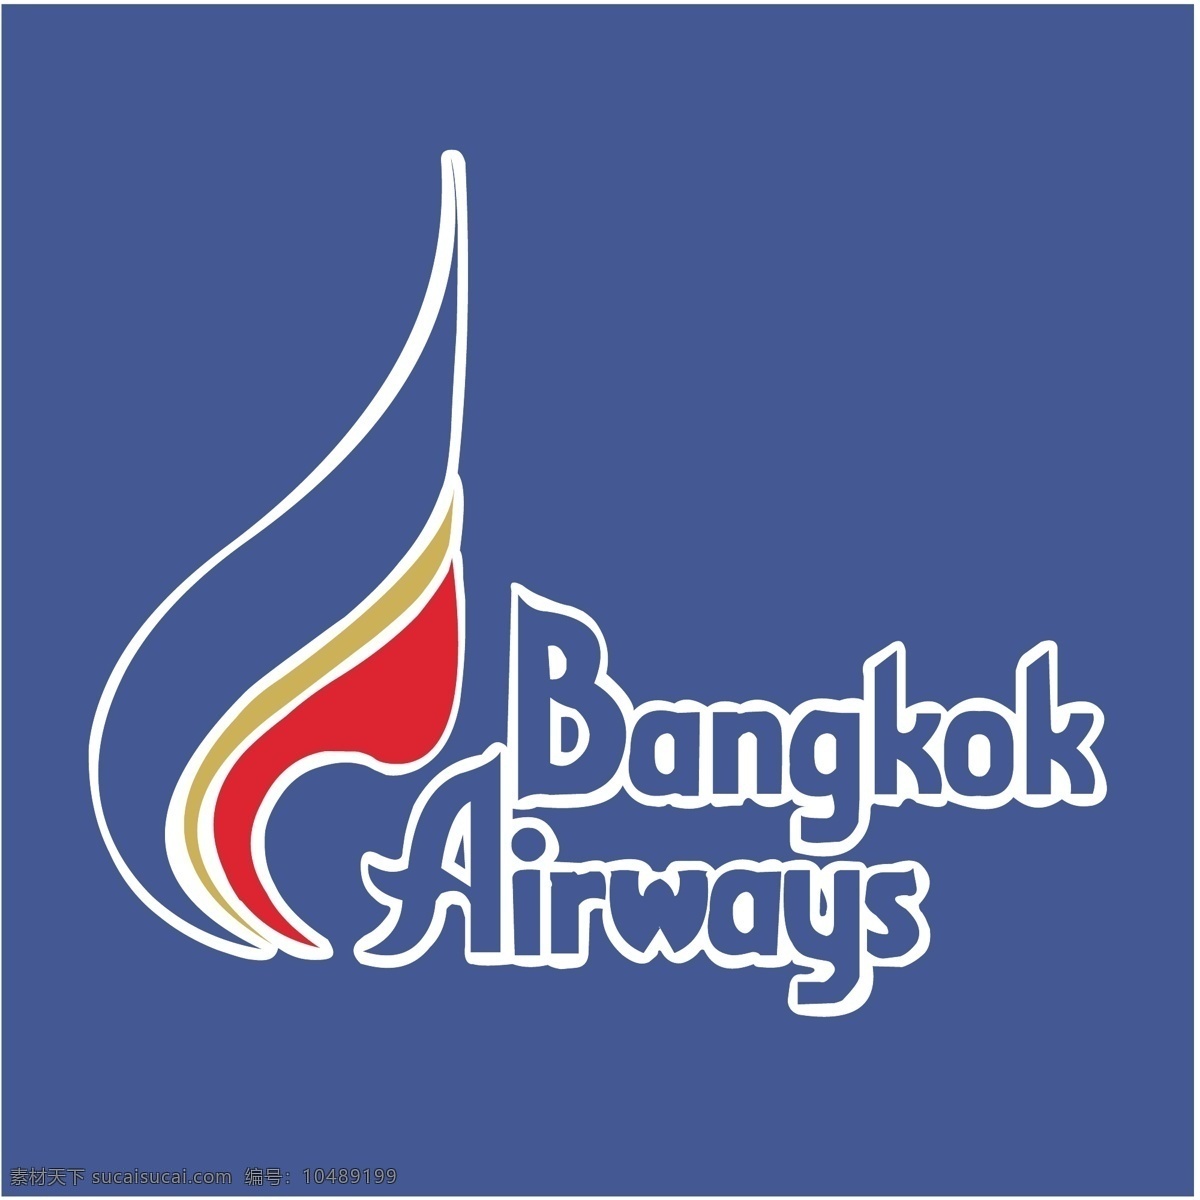 国际 航空 曼谷 曼谷航空公司 航空公司 标识 矢量 eps向量 标志 快运 向量 矢量图 建筑家居